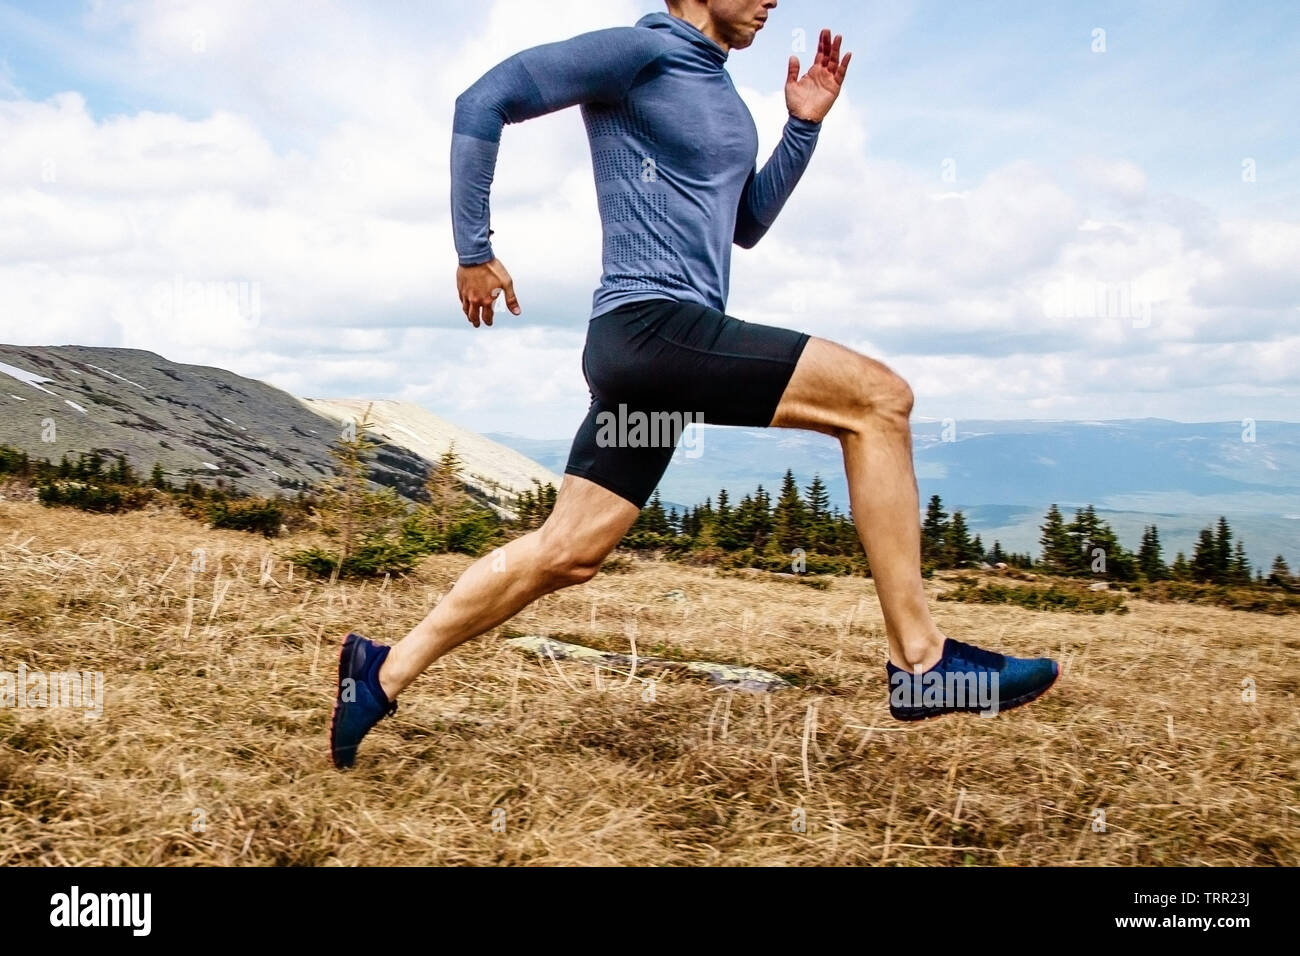 Laufender Mann Athlet run Mountain Trail Seitenansicht Stockfoto